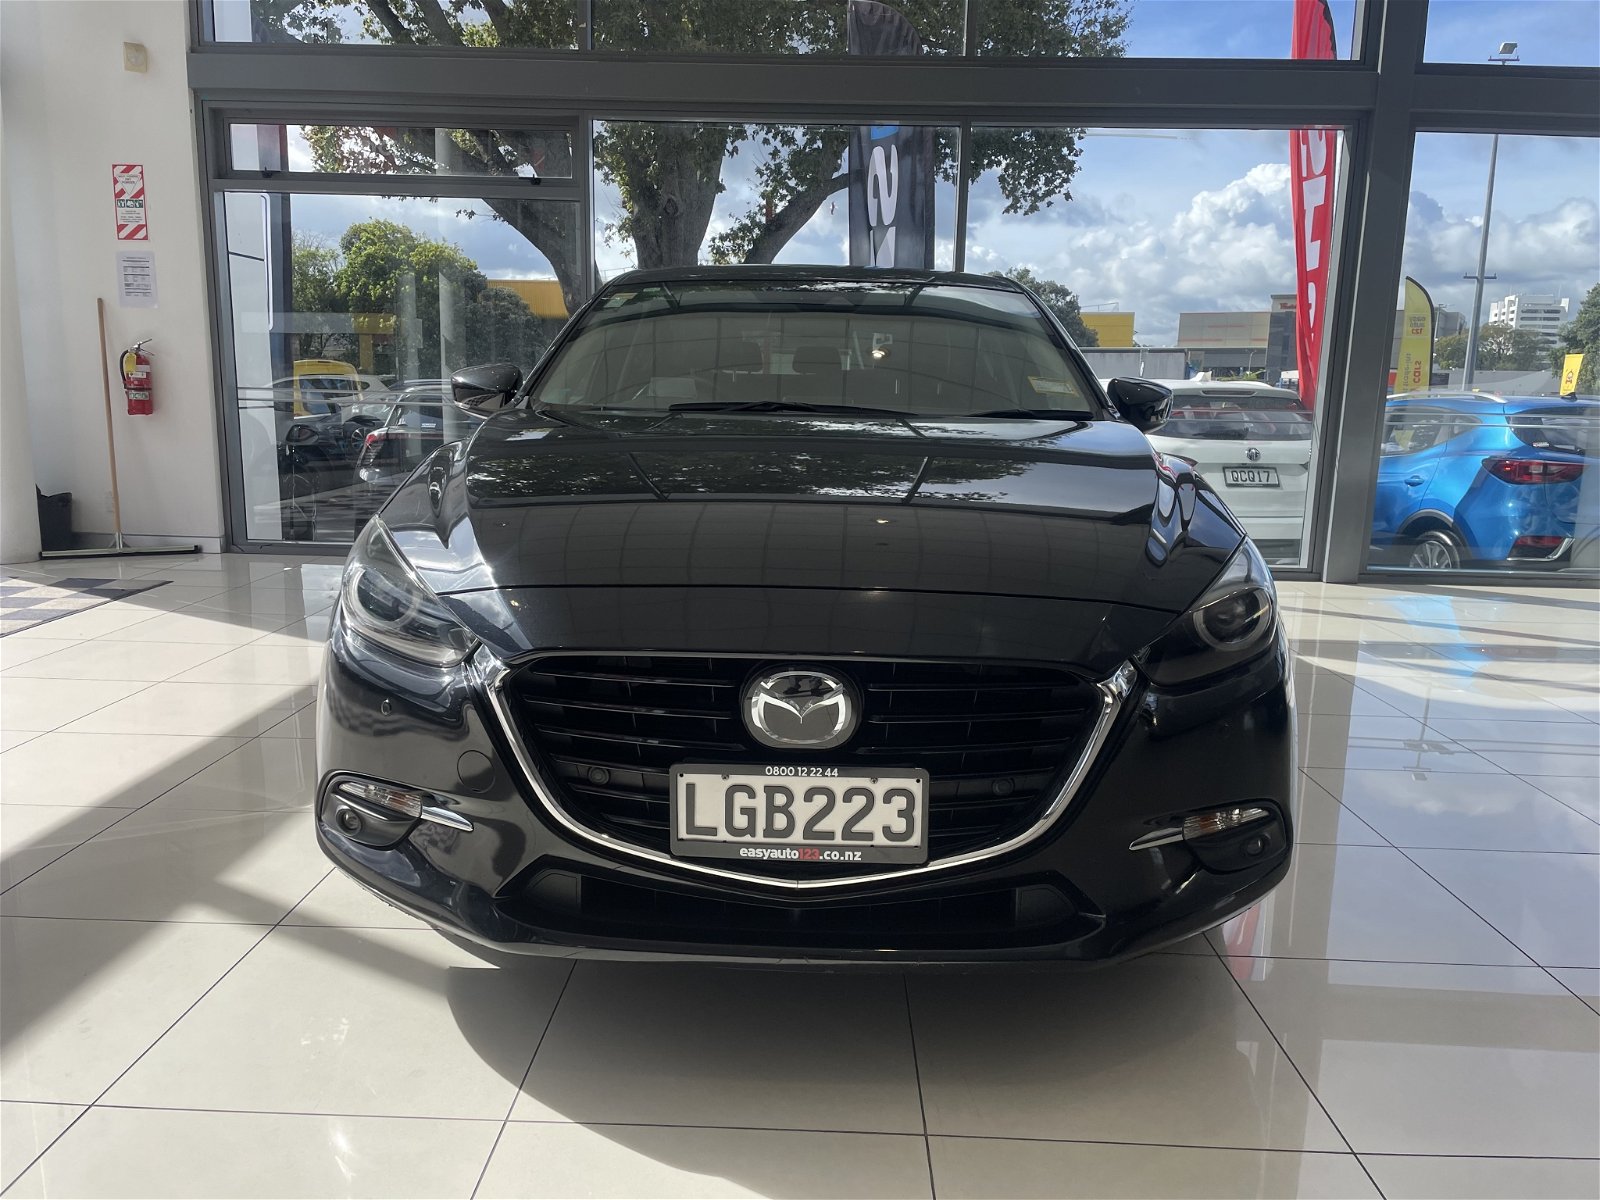 2018 Mazda 3 Sp25 Ltd 2.5P/6At